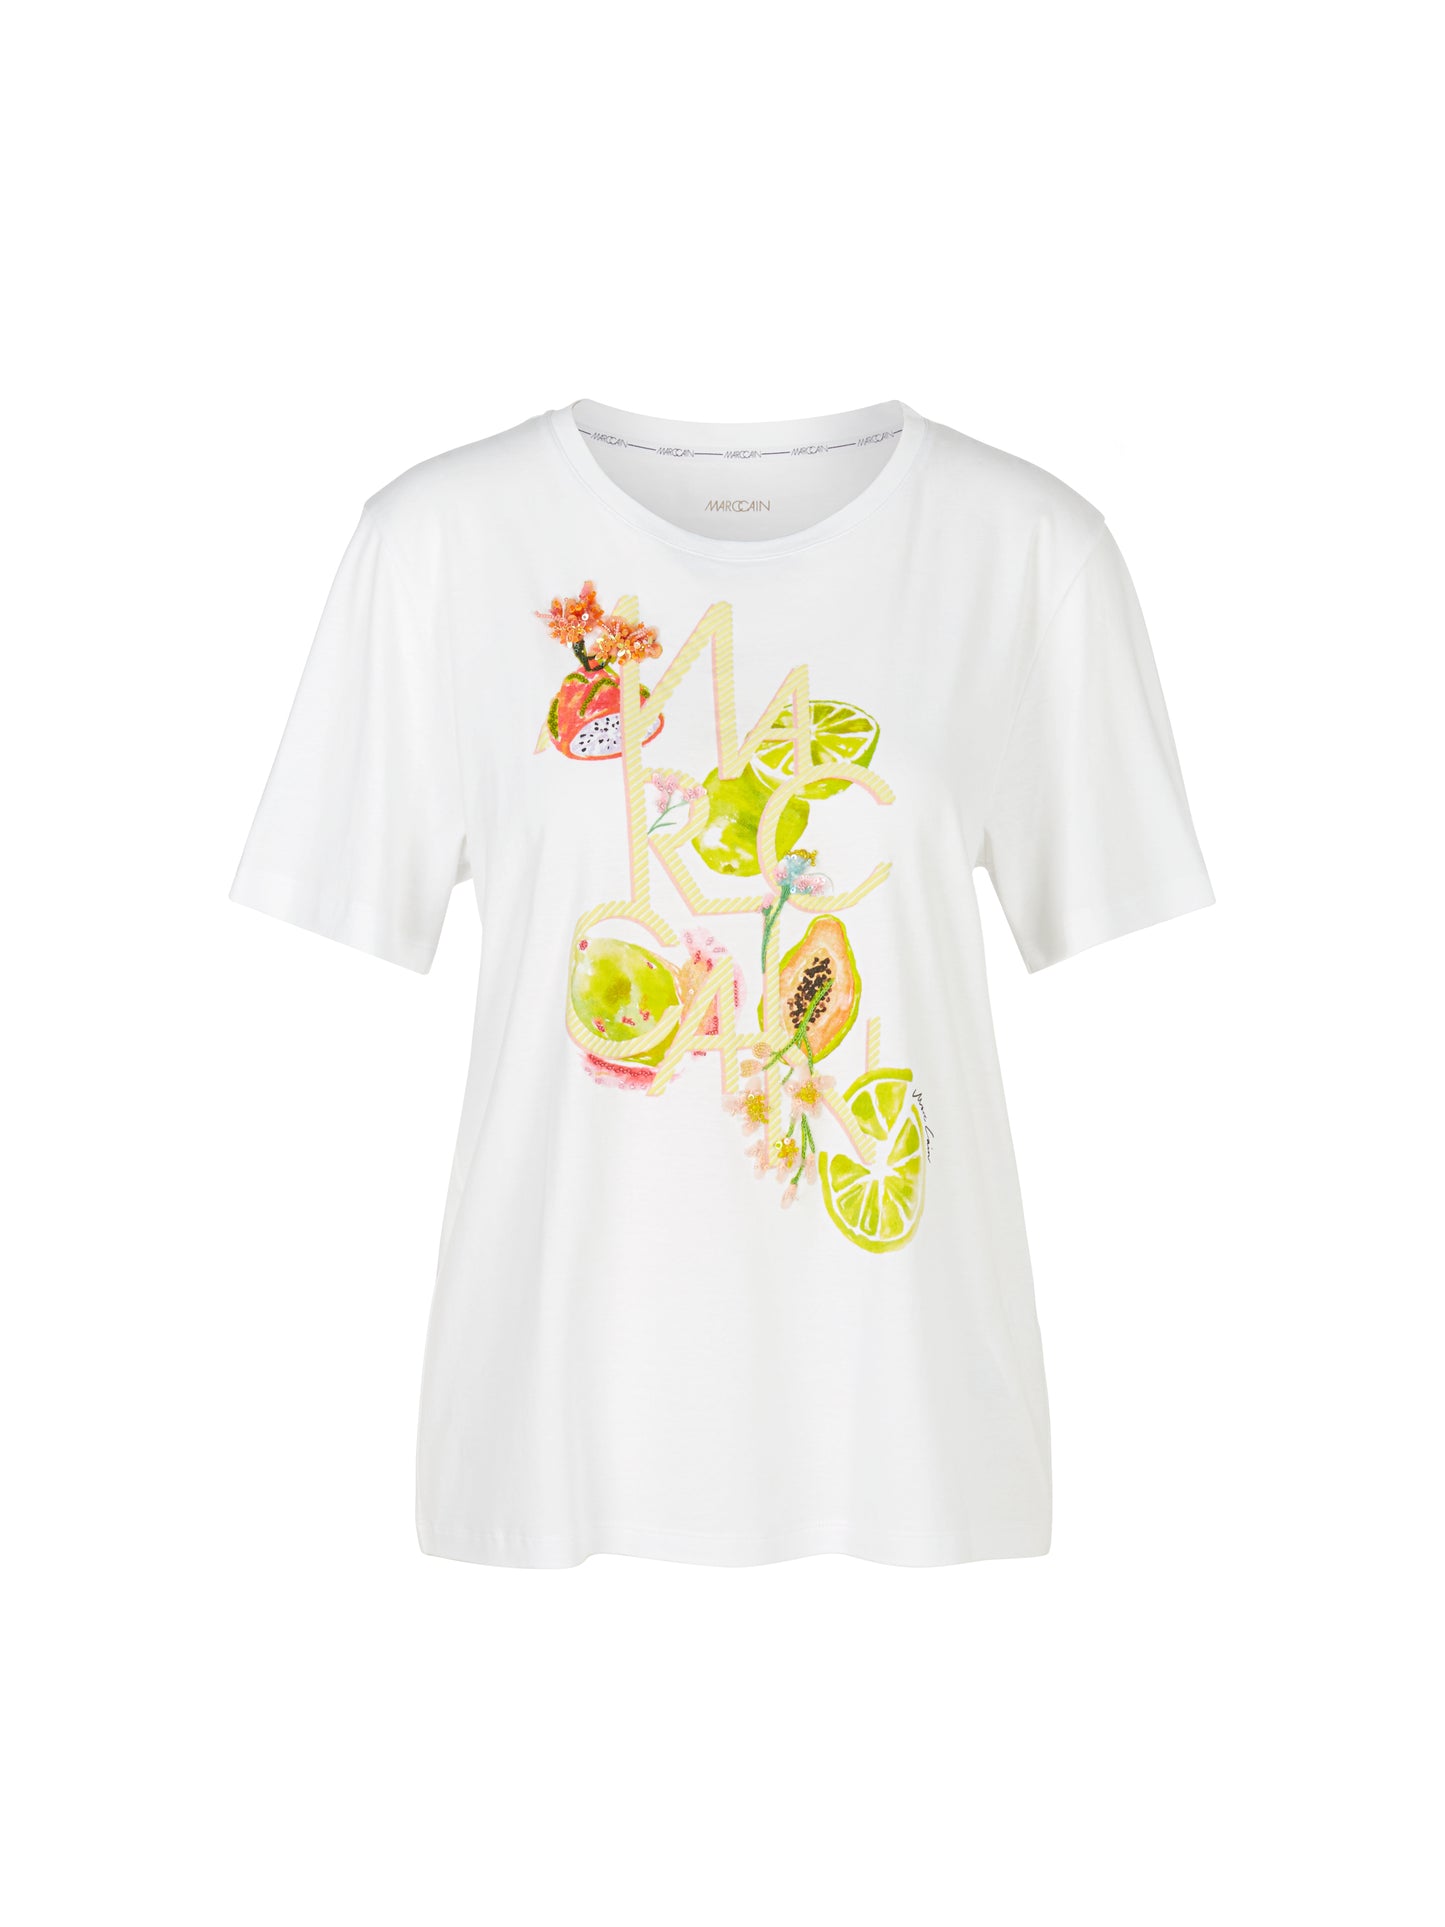 Marc Cain Collection WC4811J40 fruit applique white t-shirt